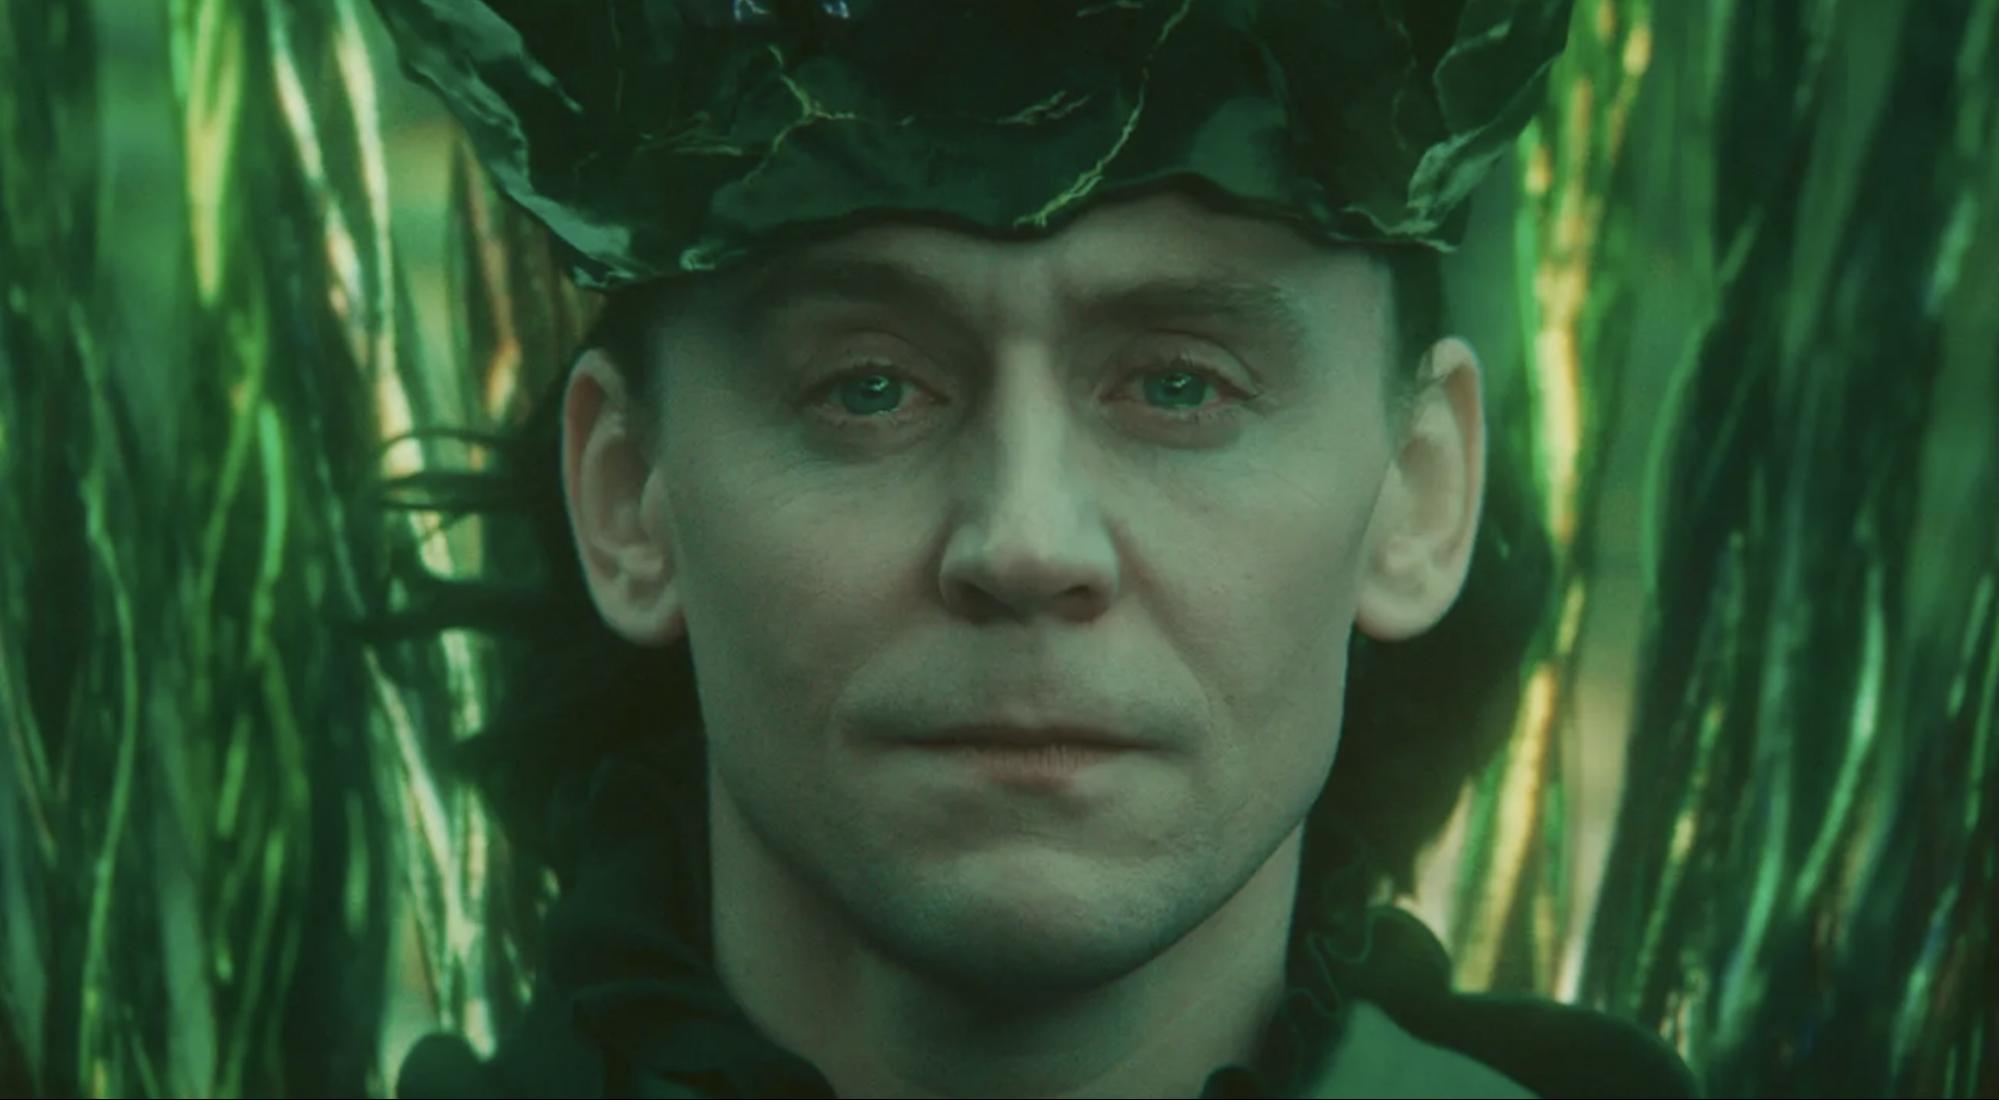 Cena da série Loki. Na imagem, Loki, interpretado por Tom Hiddleston, está olhando para frente, com os olhos marejados e o rosto melancólico. Ele é um homem adulto, de pele branca e olhos claros, cabelos no comprimento dos ombros e de cor escura. Está usando uma coroa na cabeça. A imagem está dando um close-up no rosto de Loki. O fundo é na cor verde escura e toda imagem tem um filtro esverdeado.